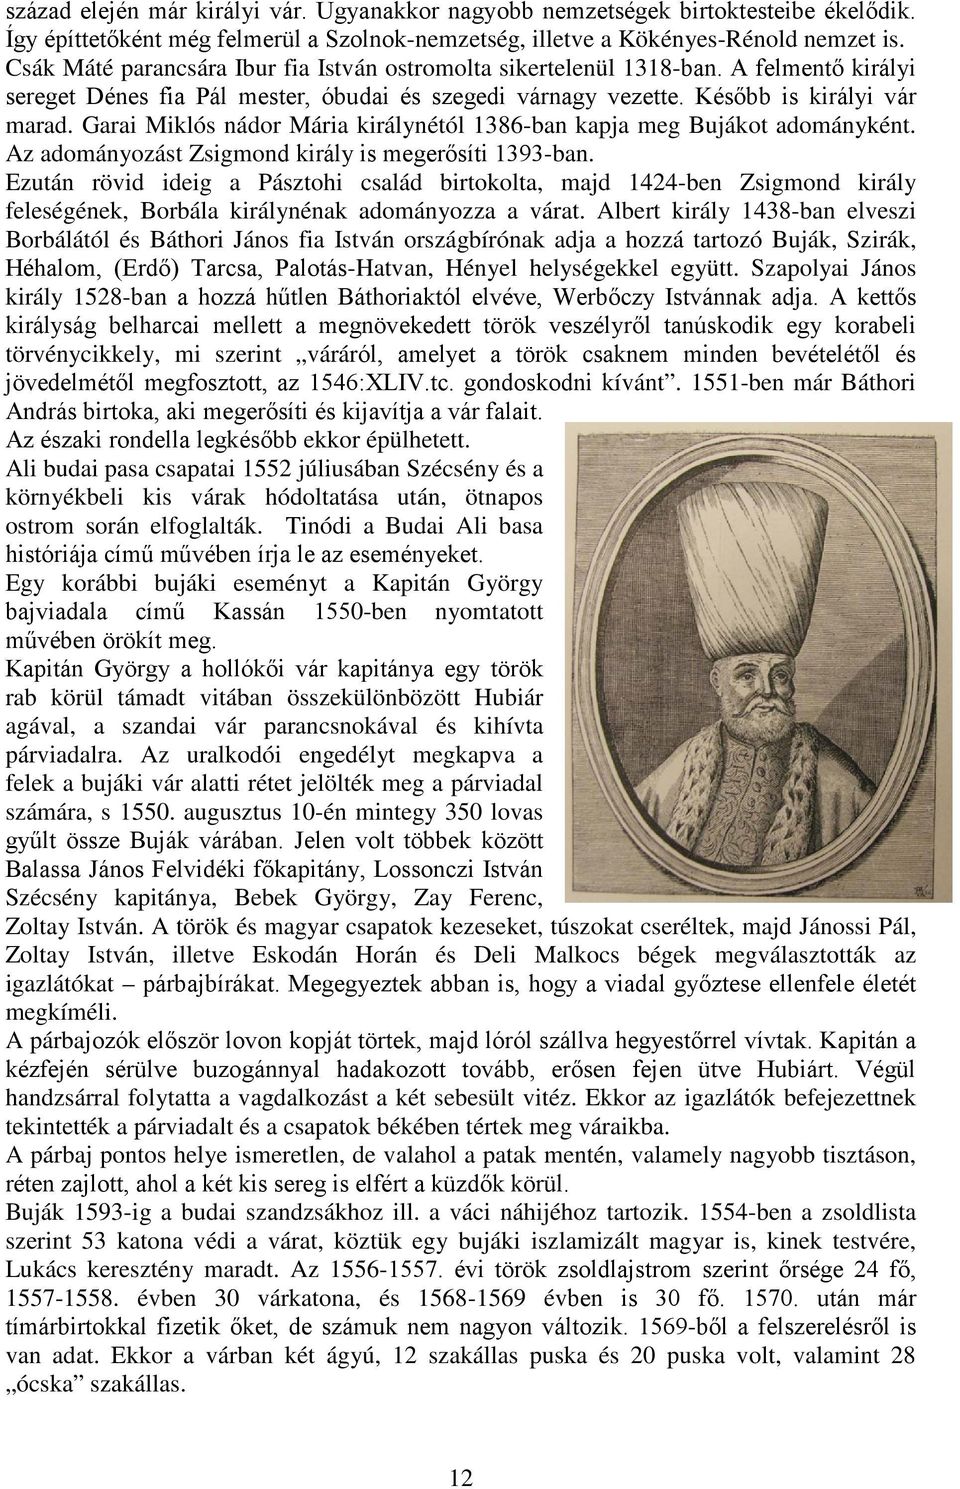 Garai Miklós nádor Mária királynétól 1386-ban kapja meg Bujákot adományként. Az adományozást Zsigmond király is megerősíti 1393-ban.